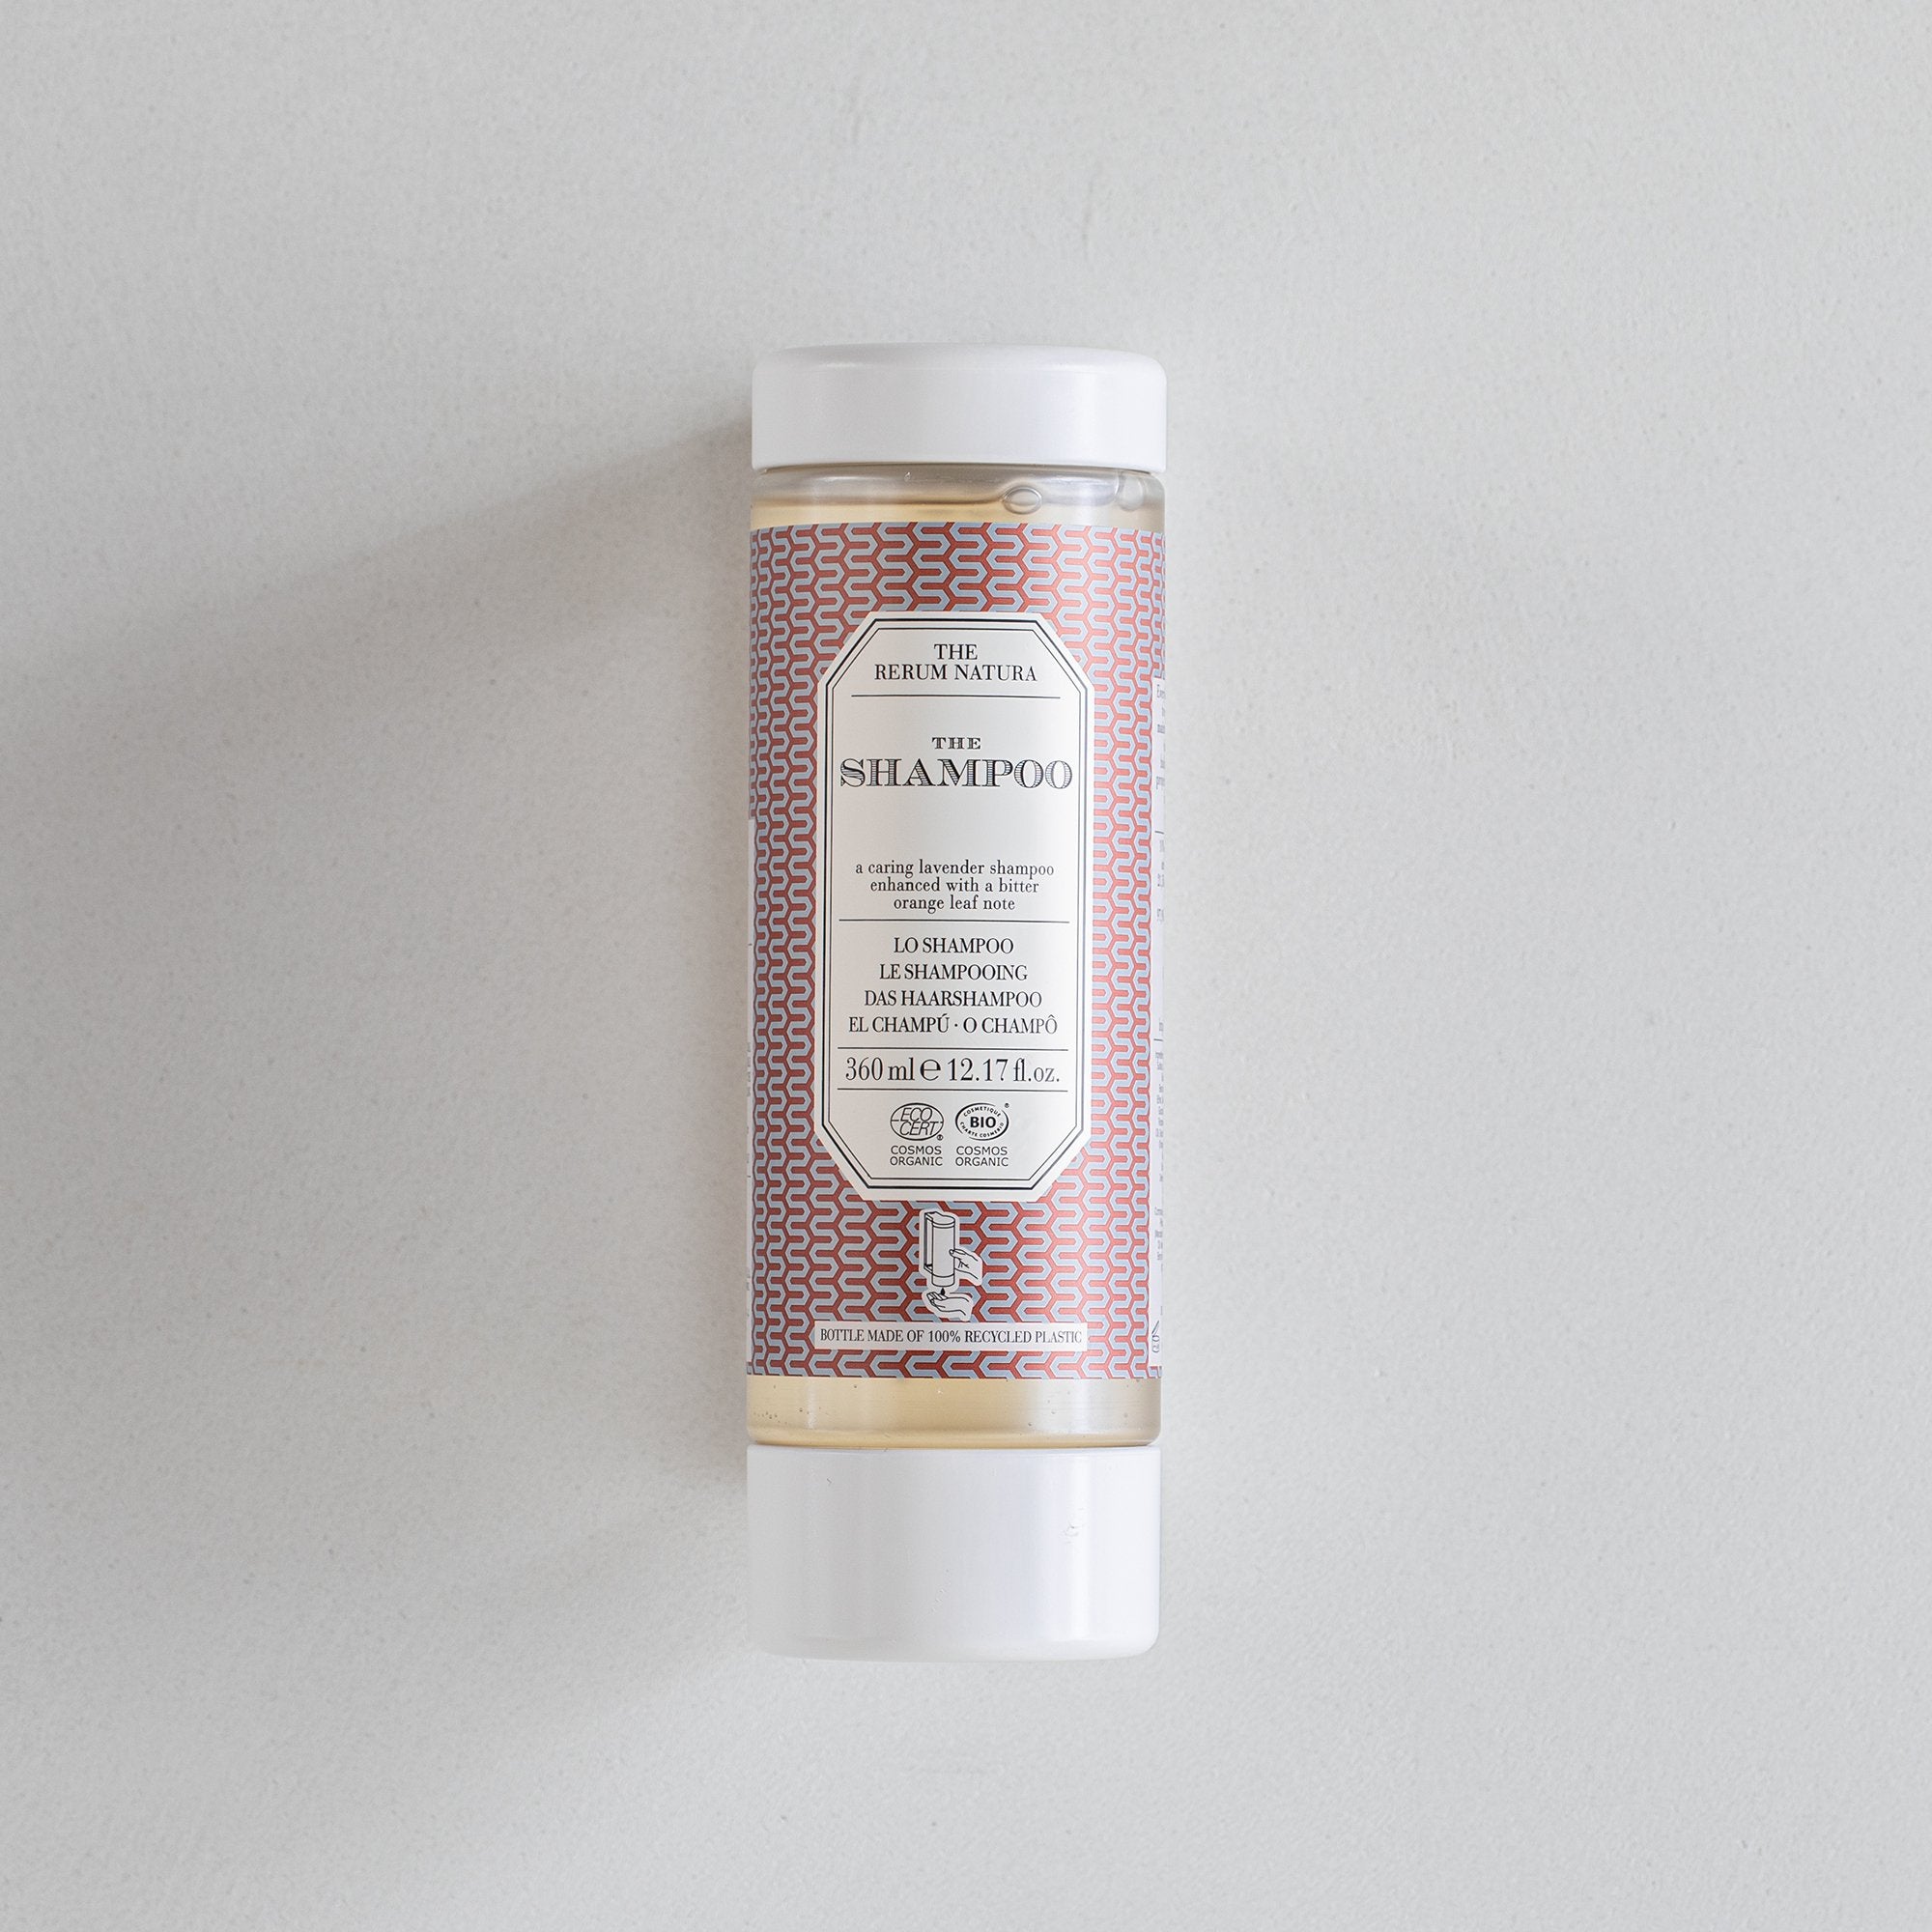 The rerum natura organic certified shampoo (360 ml)